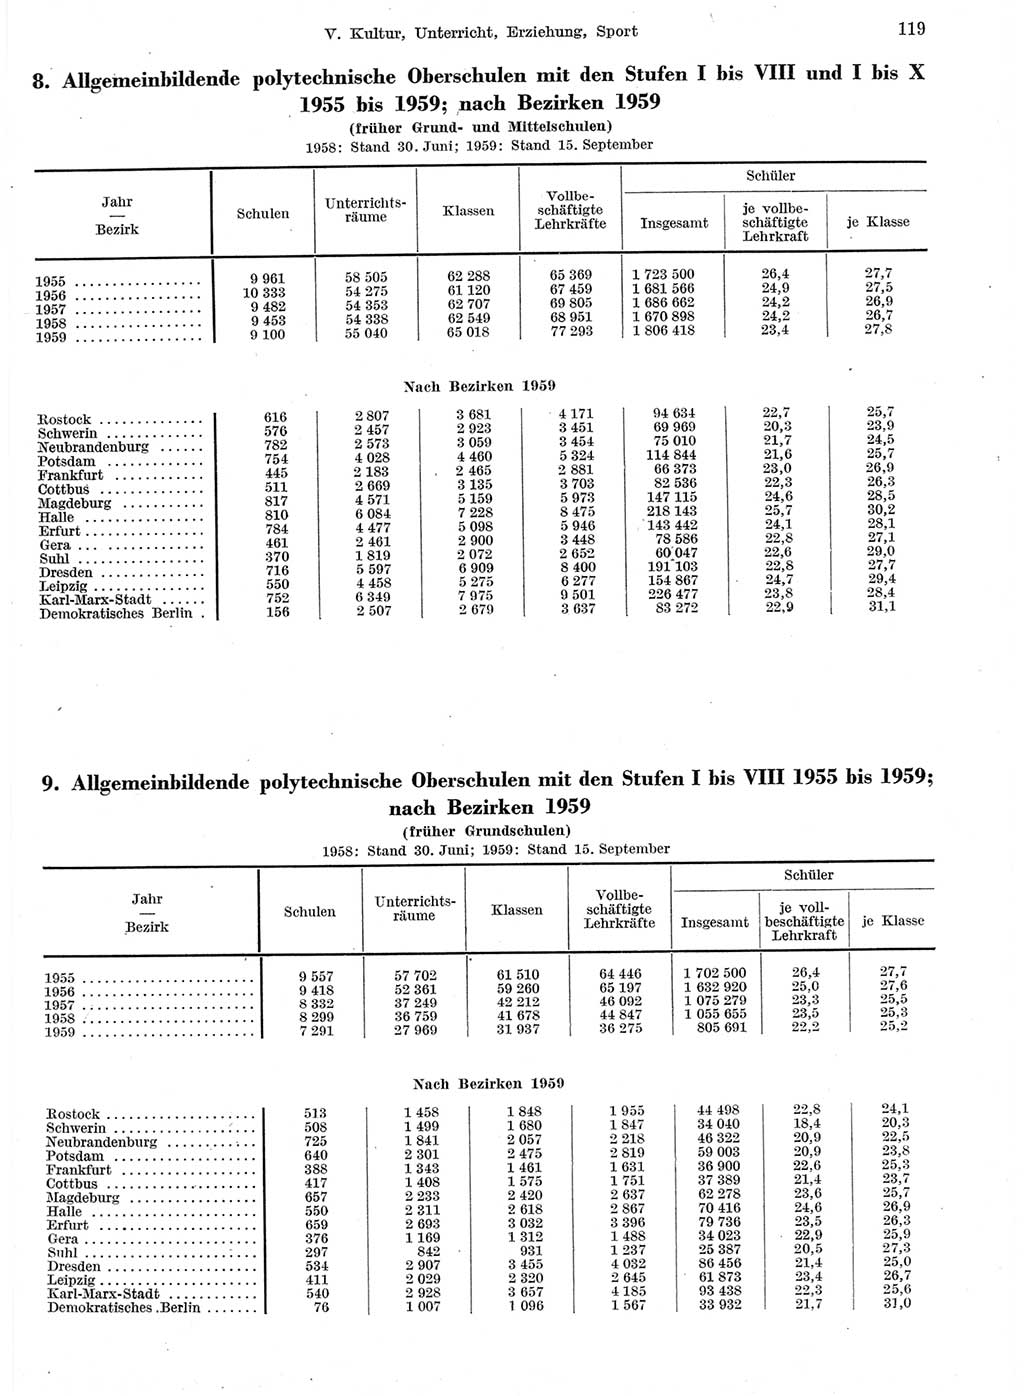 Statistisches Jahrbuch der Deutschen Demokratischen Republik (DDR) 1959, Seite 119 (Stat. Jb. DDR 1959, S. 119)